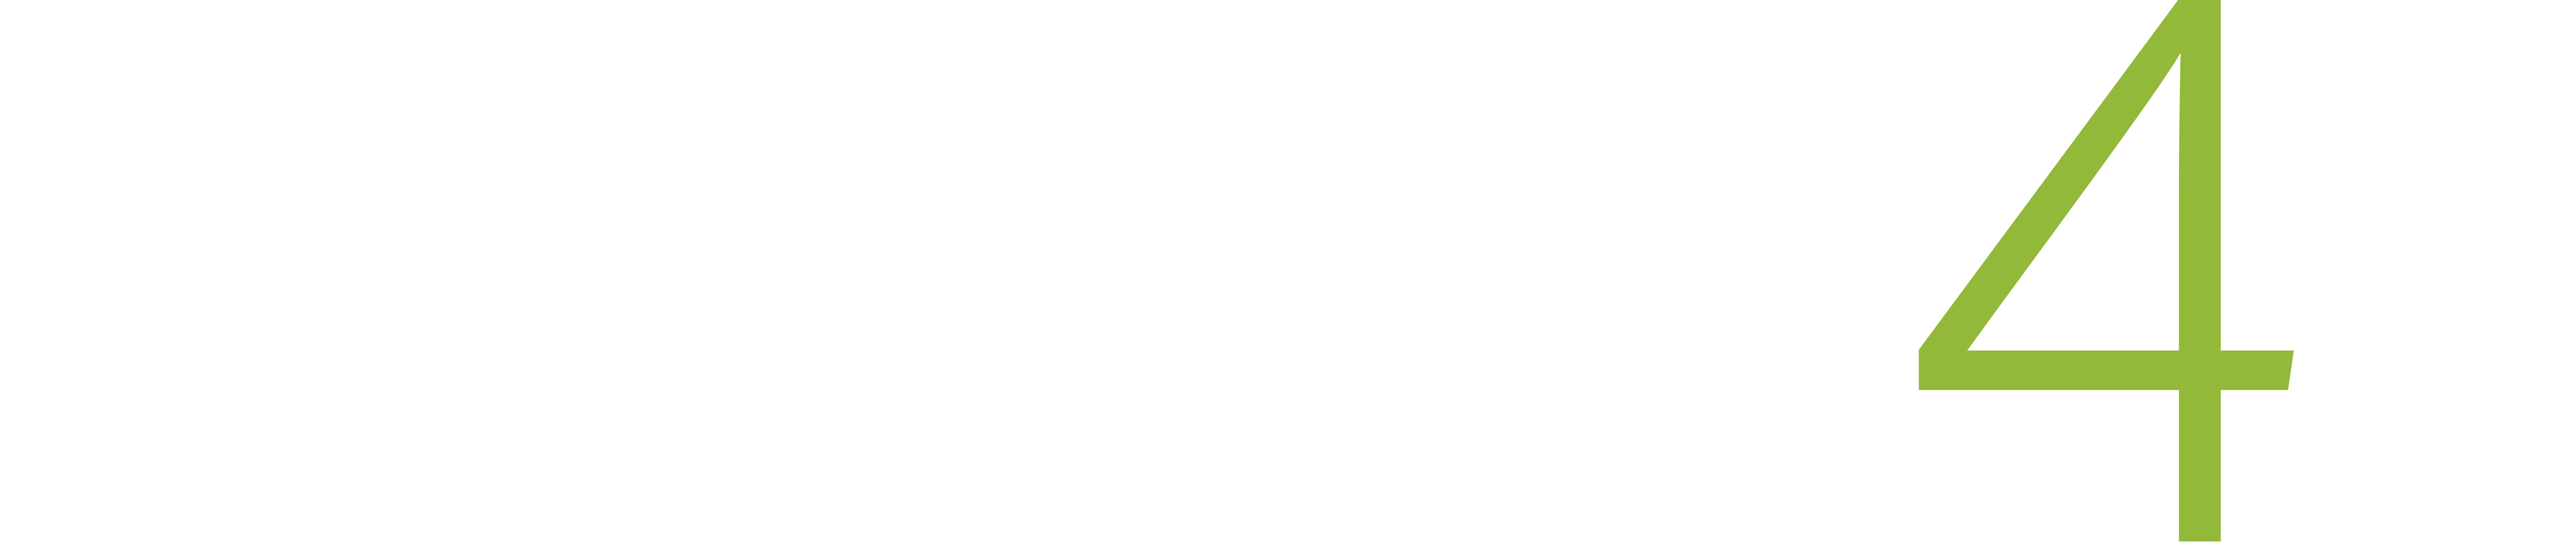 Shutters4U logo.